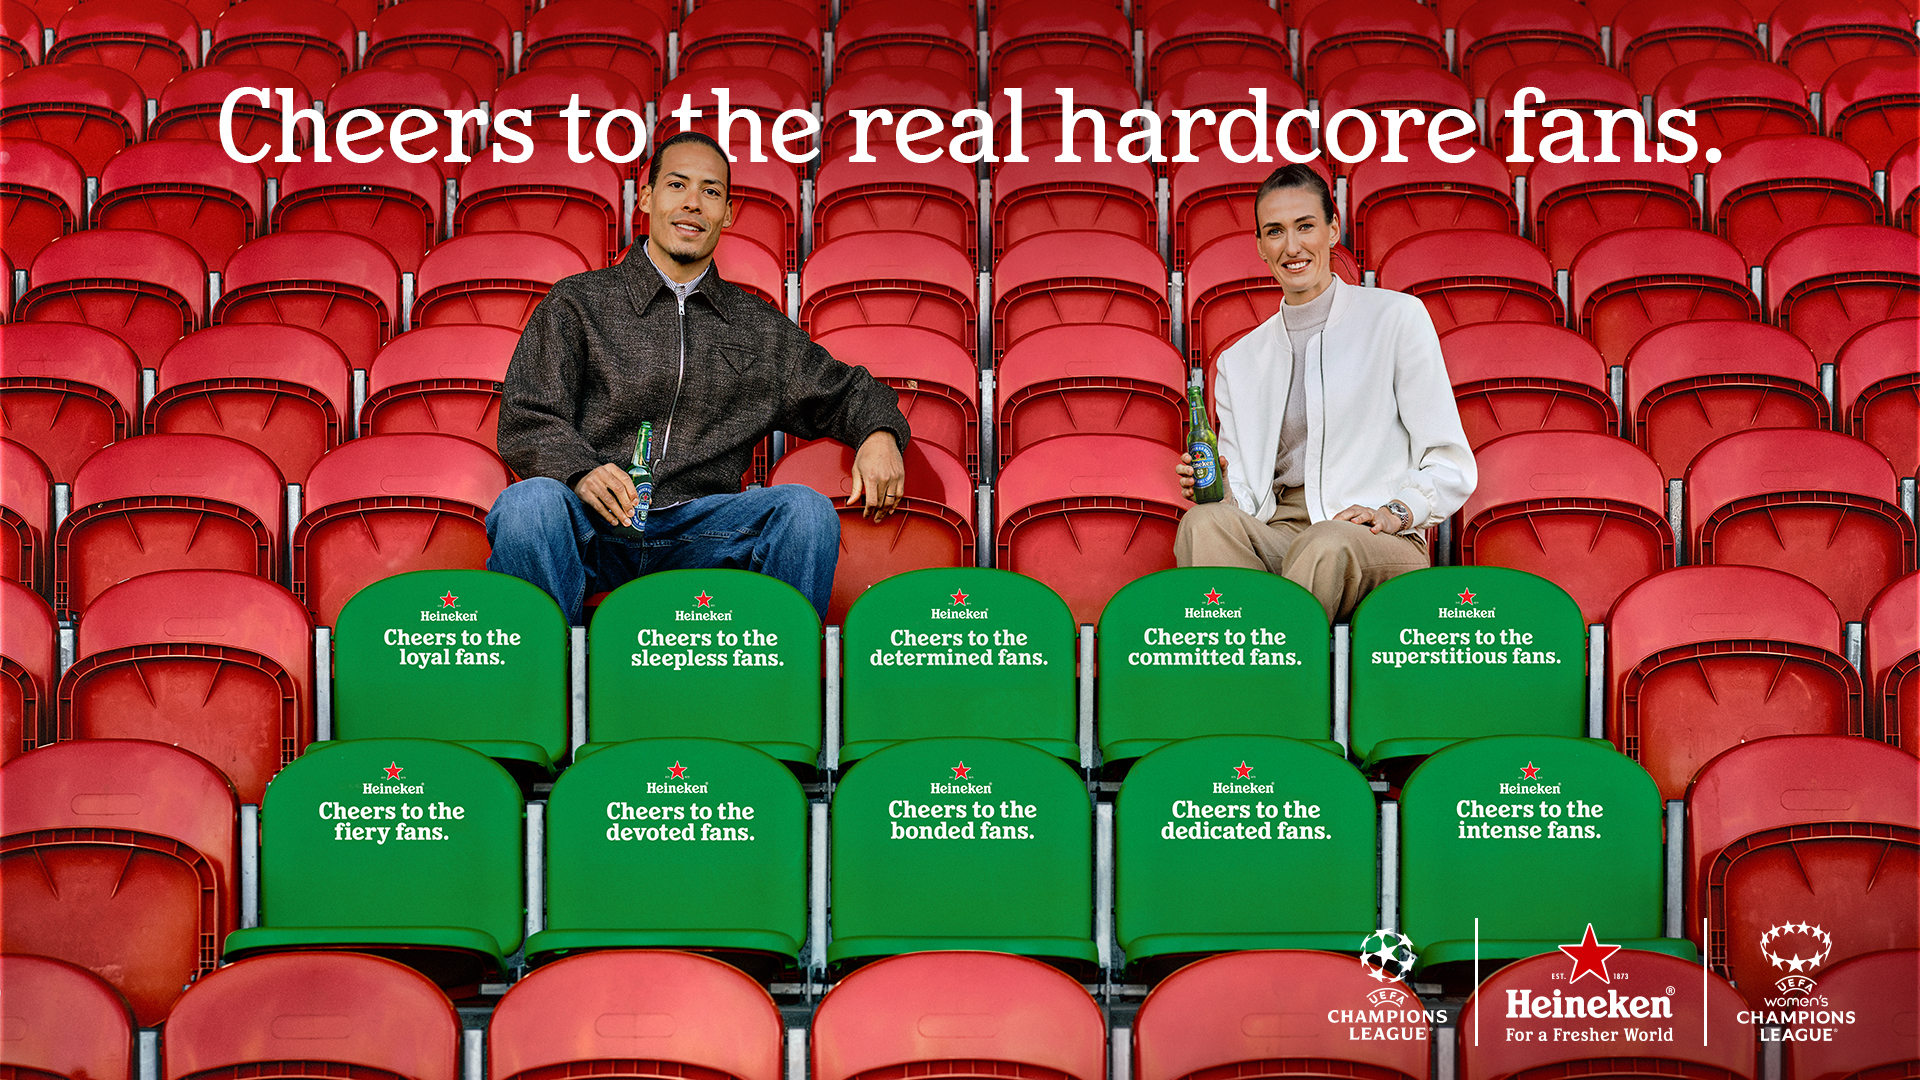 Heineken Says 'Cheers To The Real Hardcore Fans' with Virgil van